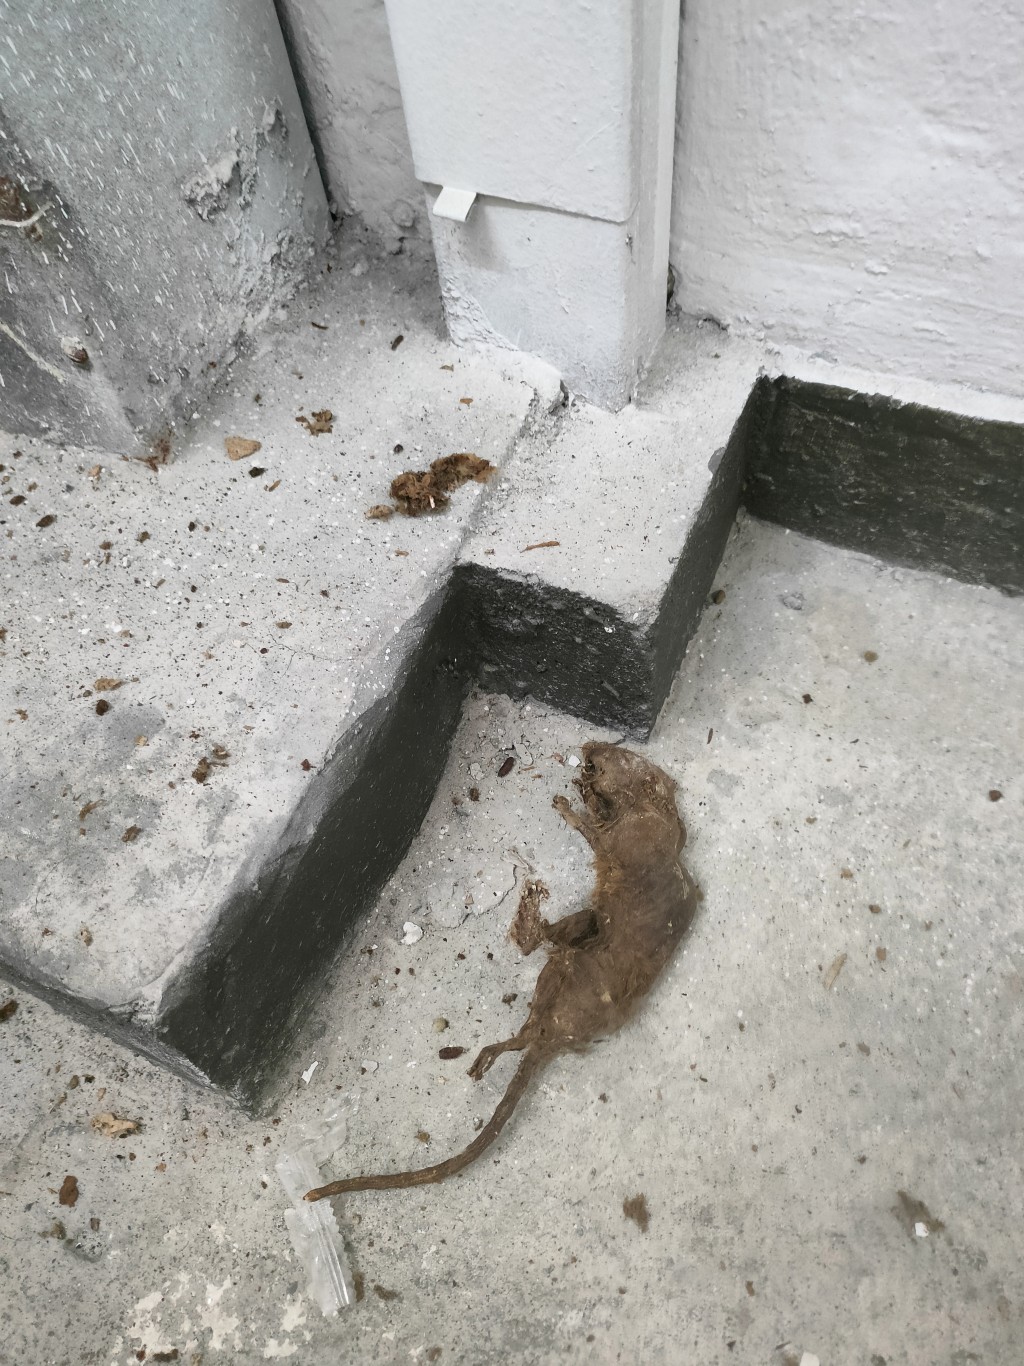 二至四樓梯間有被燒焦的死老鼠。